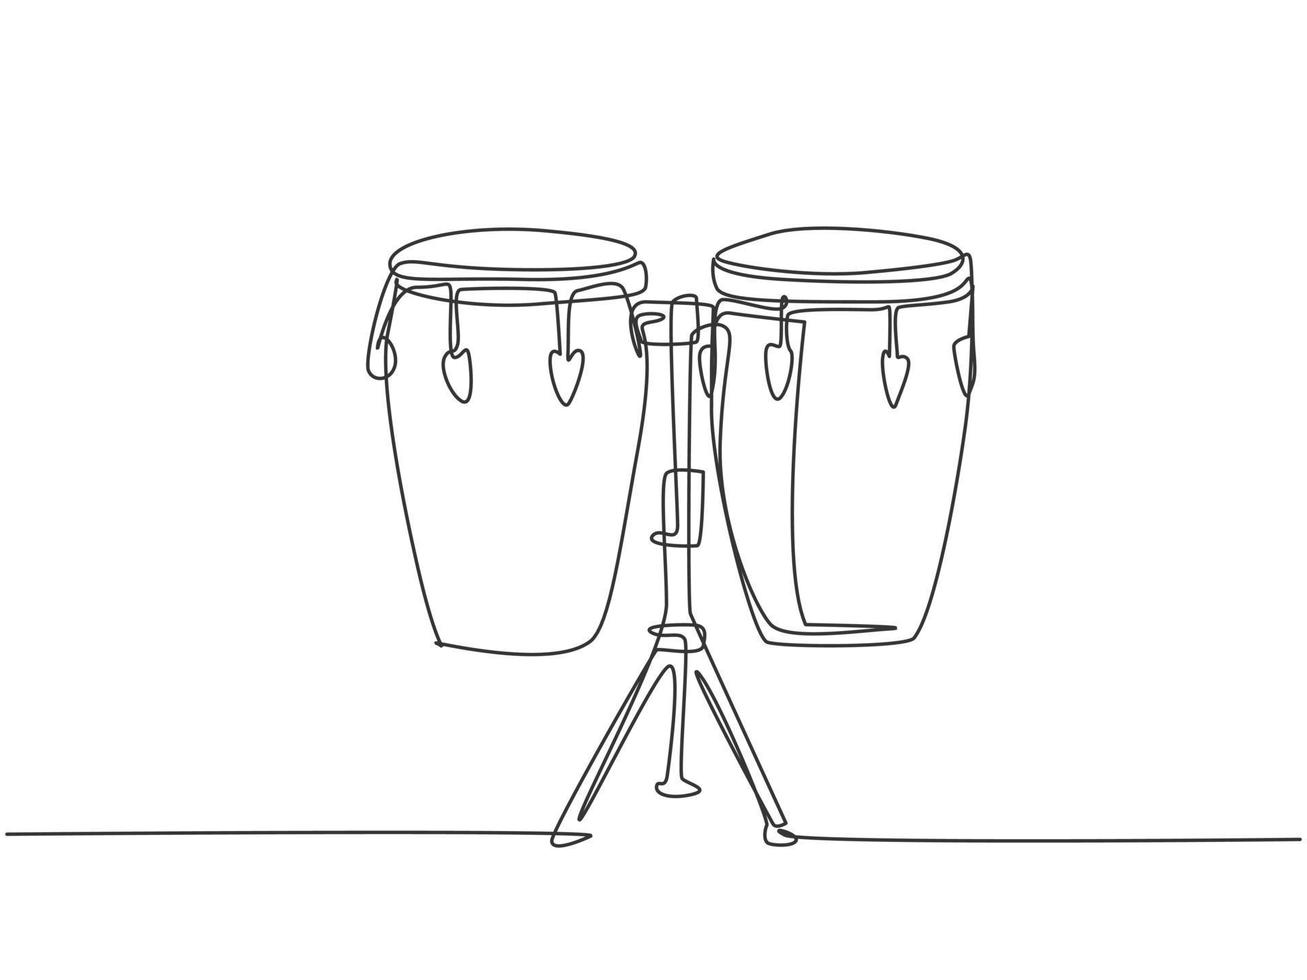 protesta antiguo Guau un dibujo de línea continua del tambor étnico africano tradicional, bongo.  concepto de instrumentos musicales de percusión. Ilustración de vector de  diseño gráfico de dibujo de línea única dinámica 3593496 Vector en